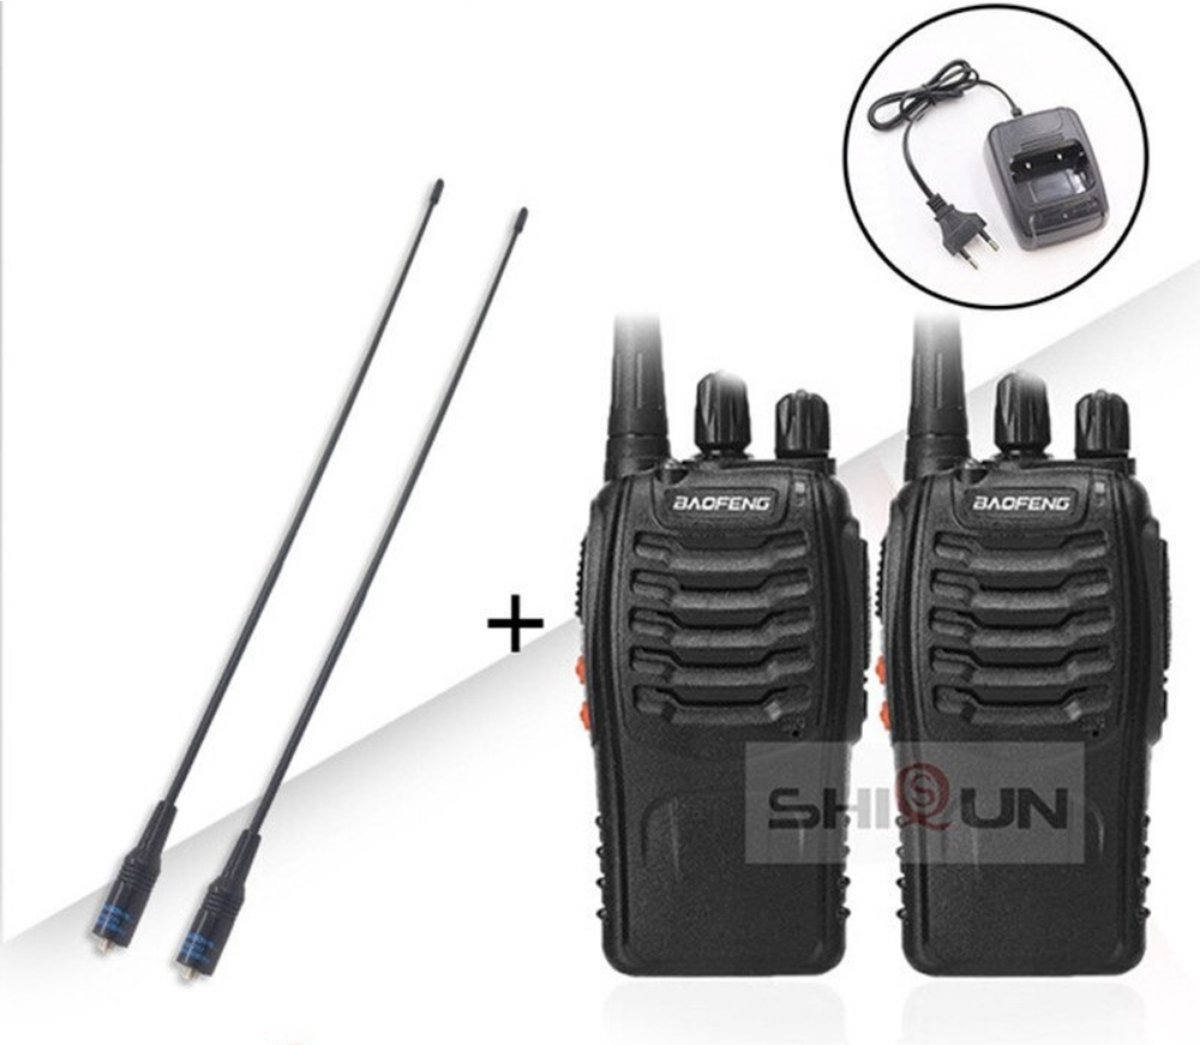 ShiSun Walkie talkie | Portofoon - Set 2 stuks - Groot bereik - Voor professioneel gebruik - 400-470Mhz